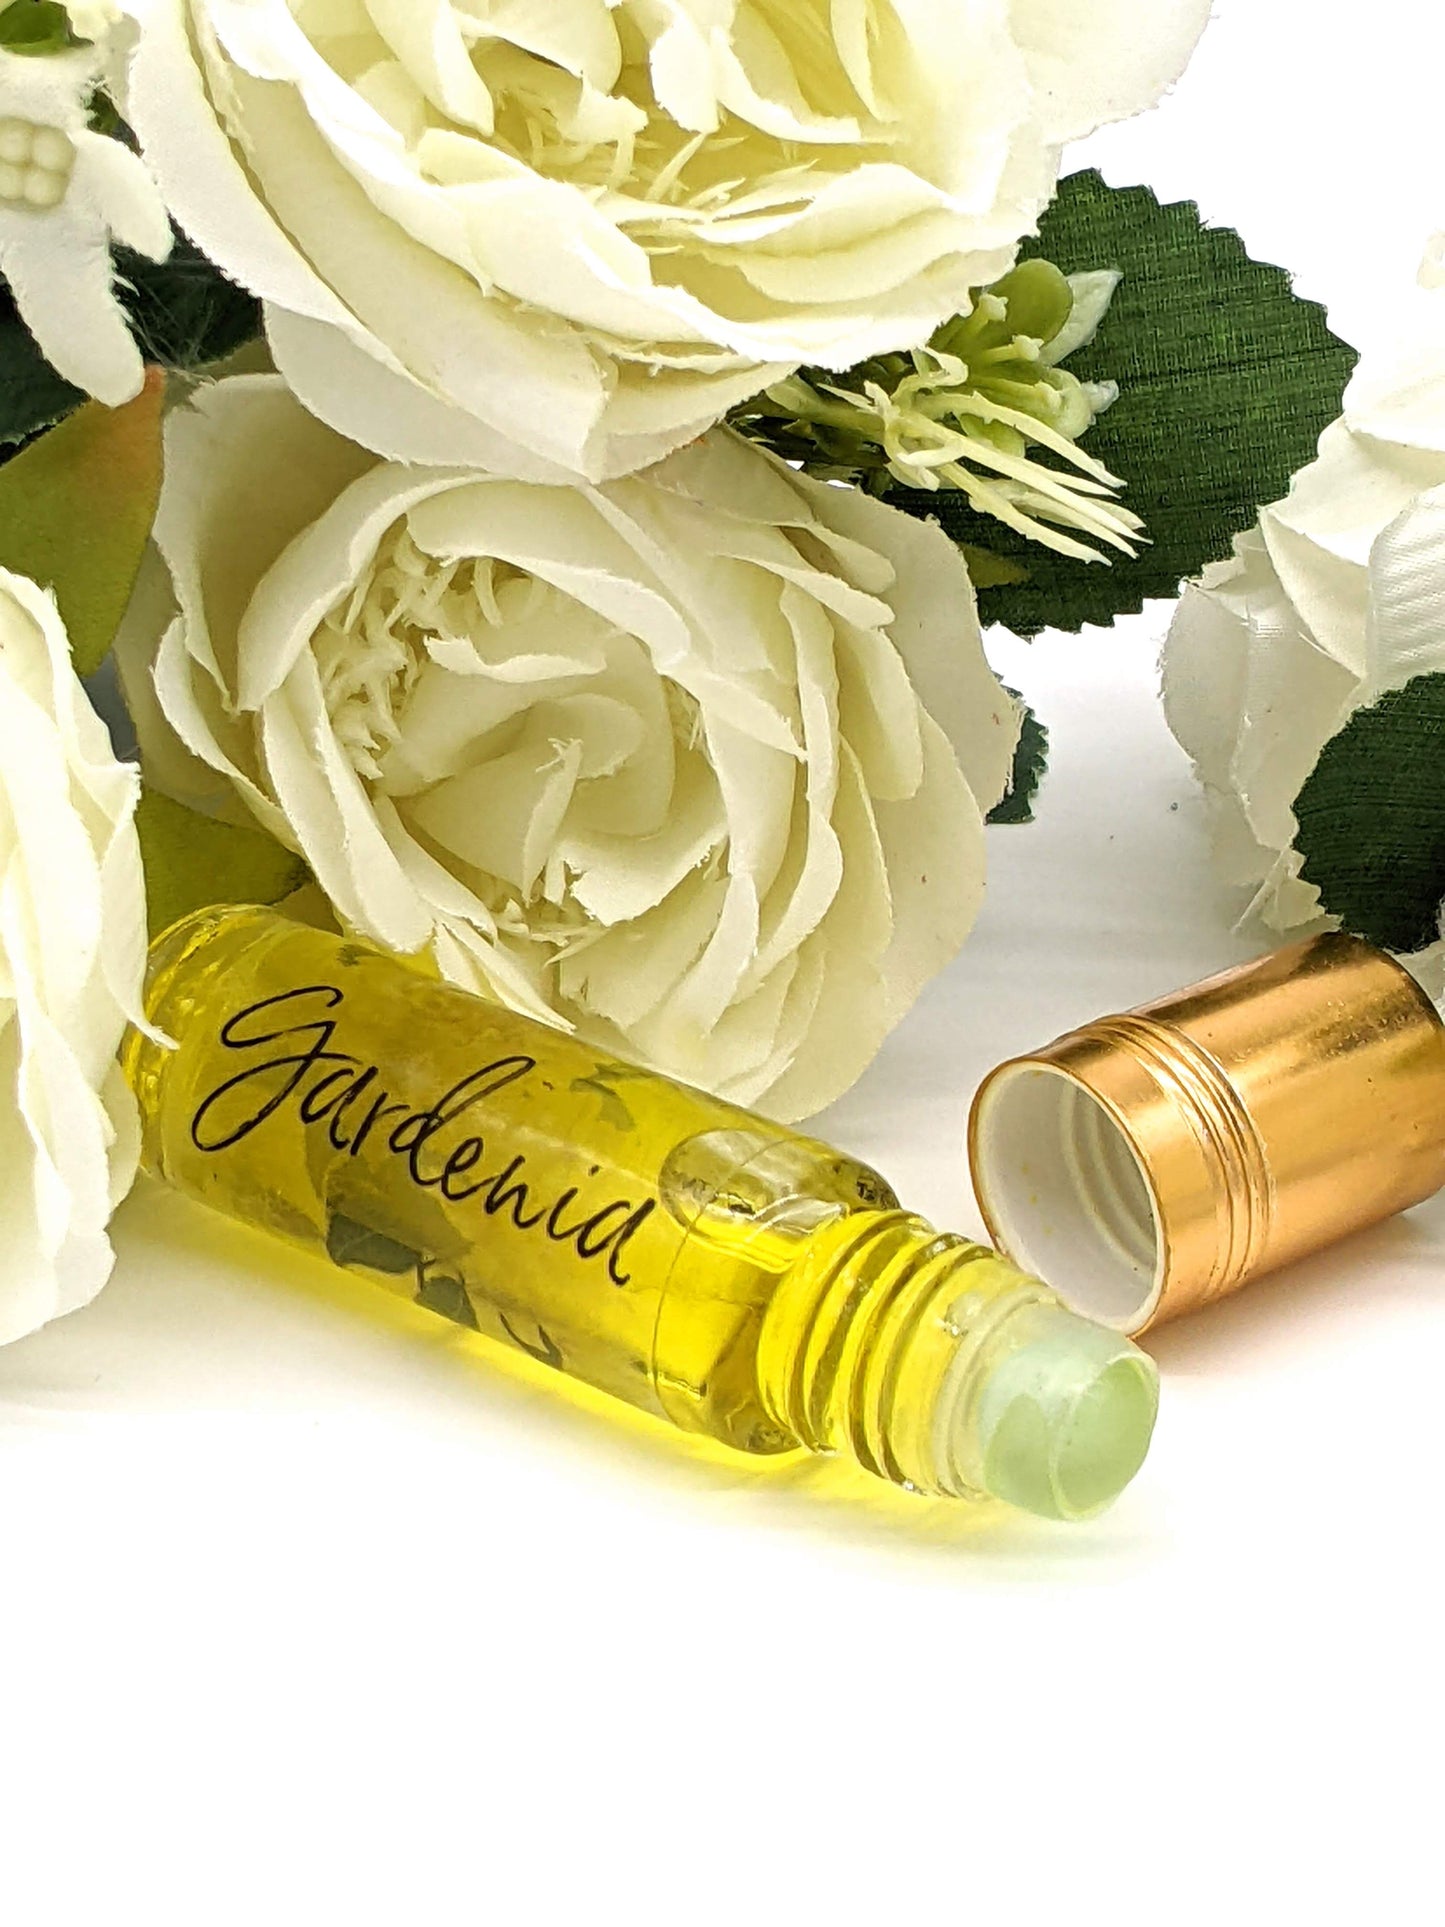 Perfume Oil - Gardenia